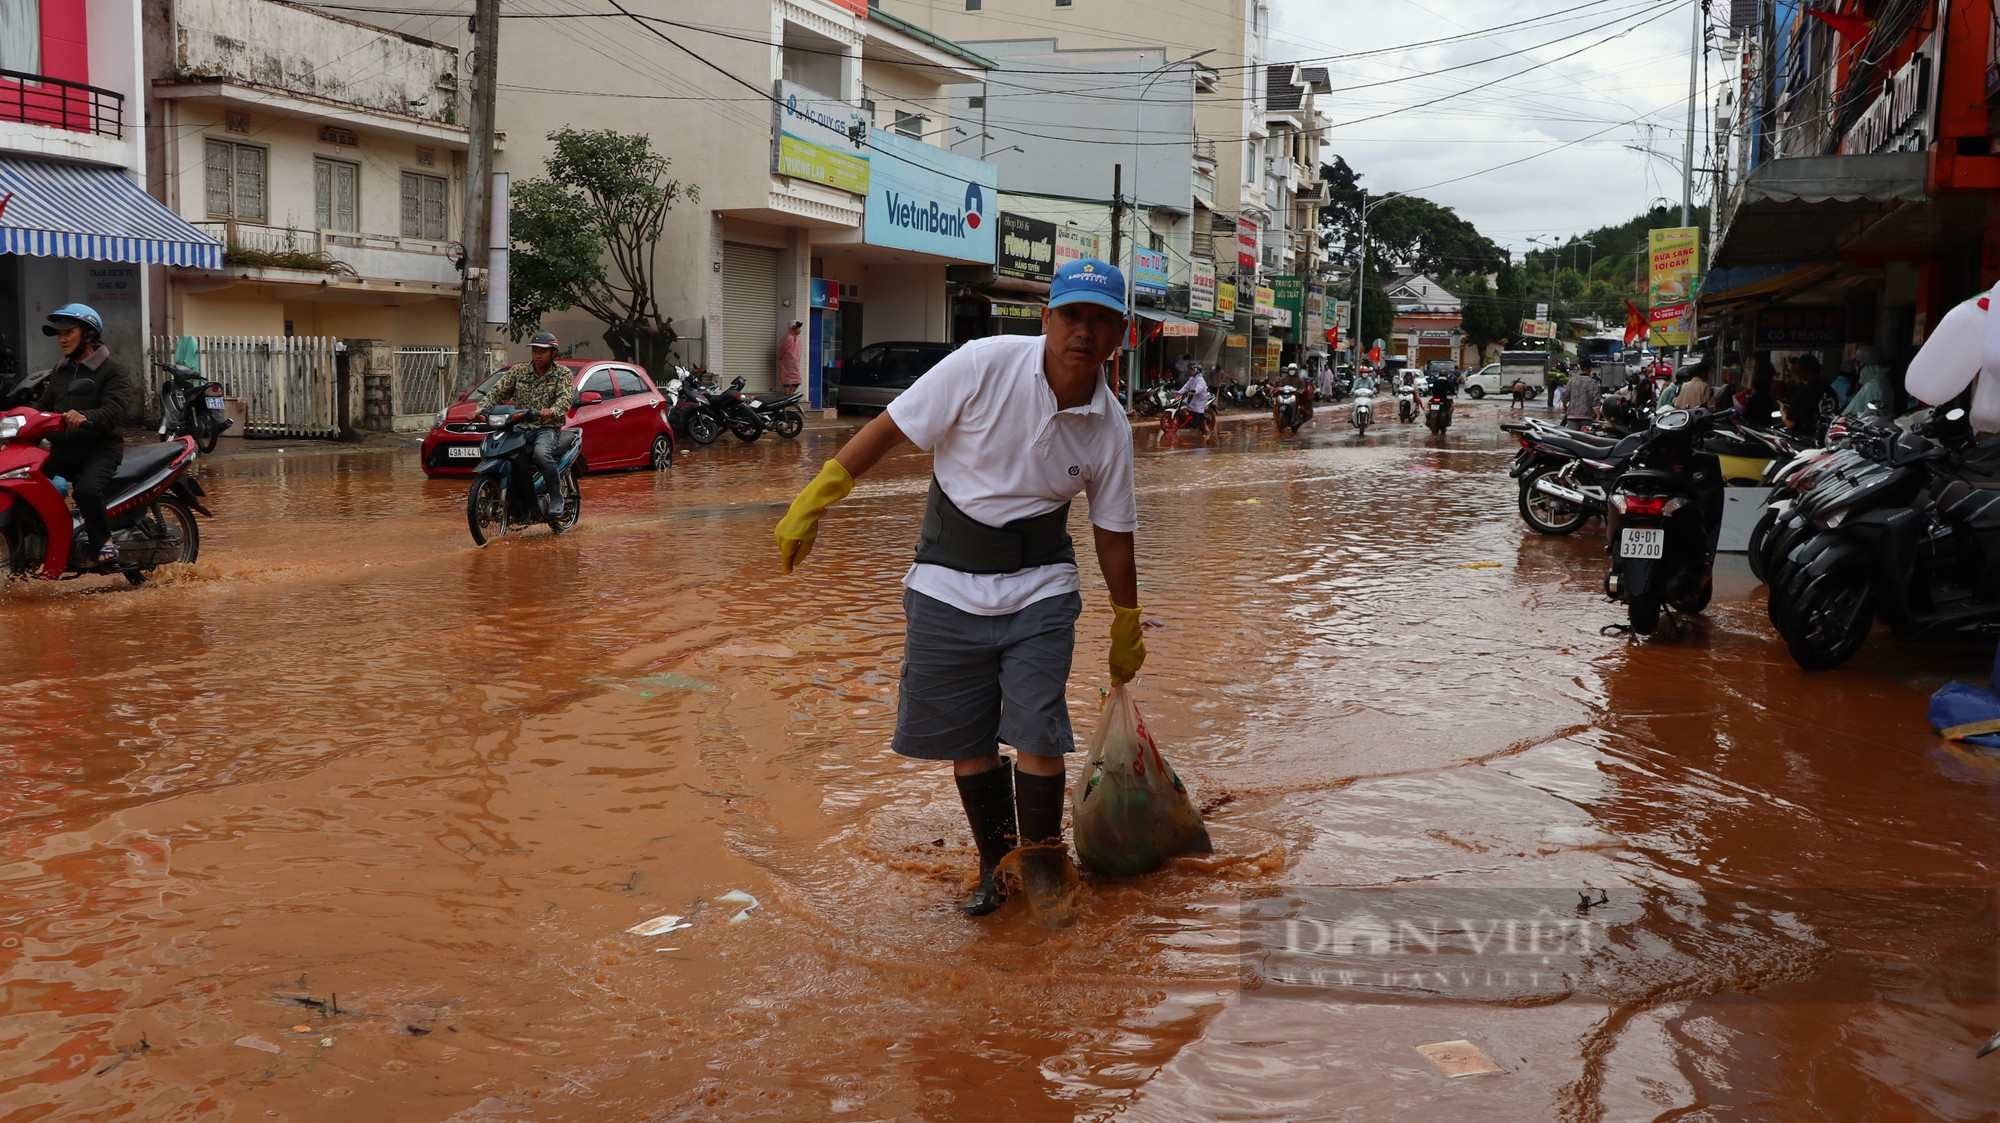 Ảnh: Người dân đường Phan Đình Phùng ở Đà Lạt bì bõm dọn nhà sau cơn mưa lớn - Ảnh 8.